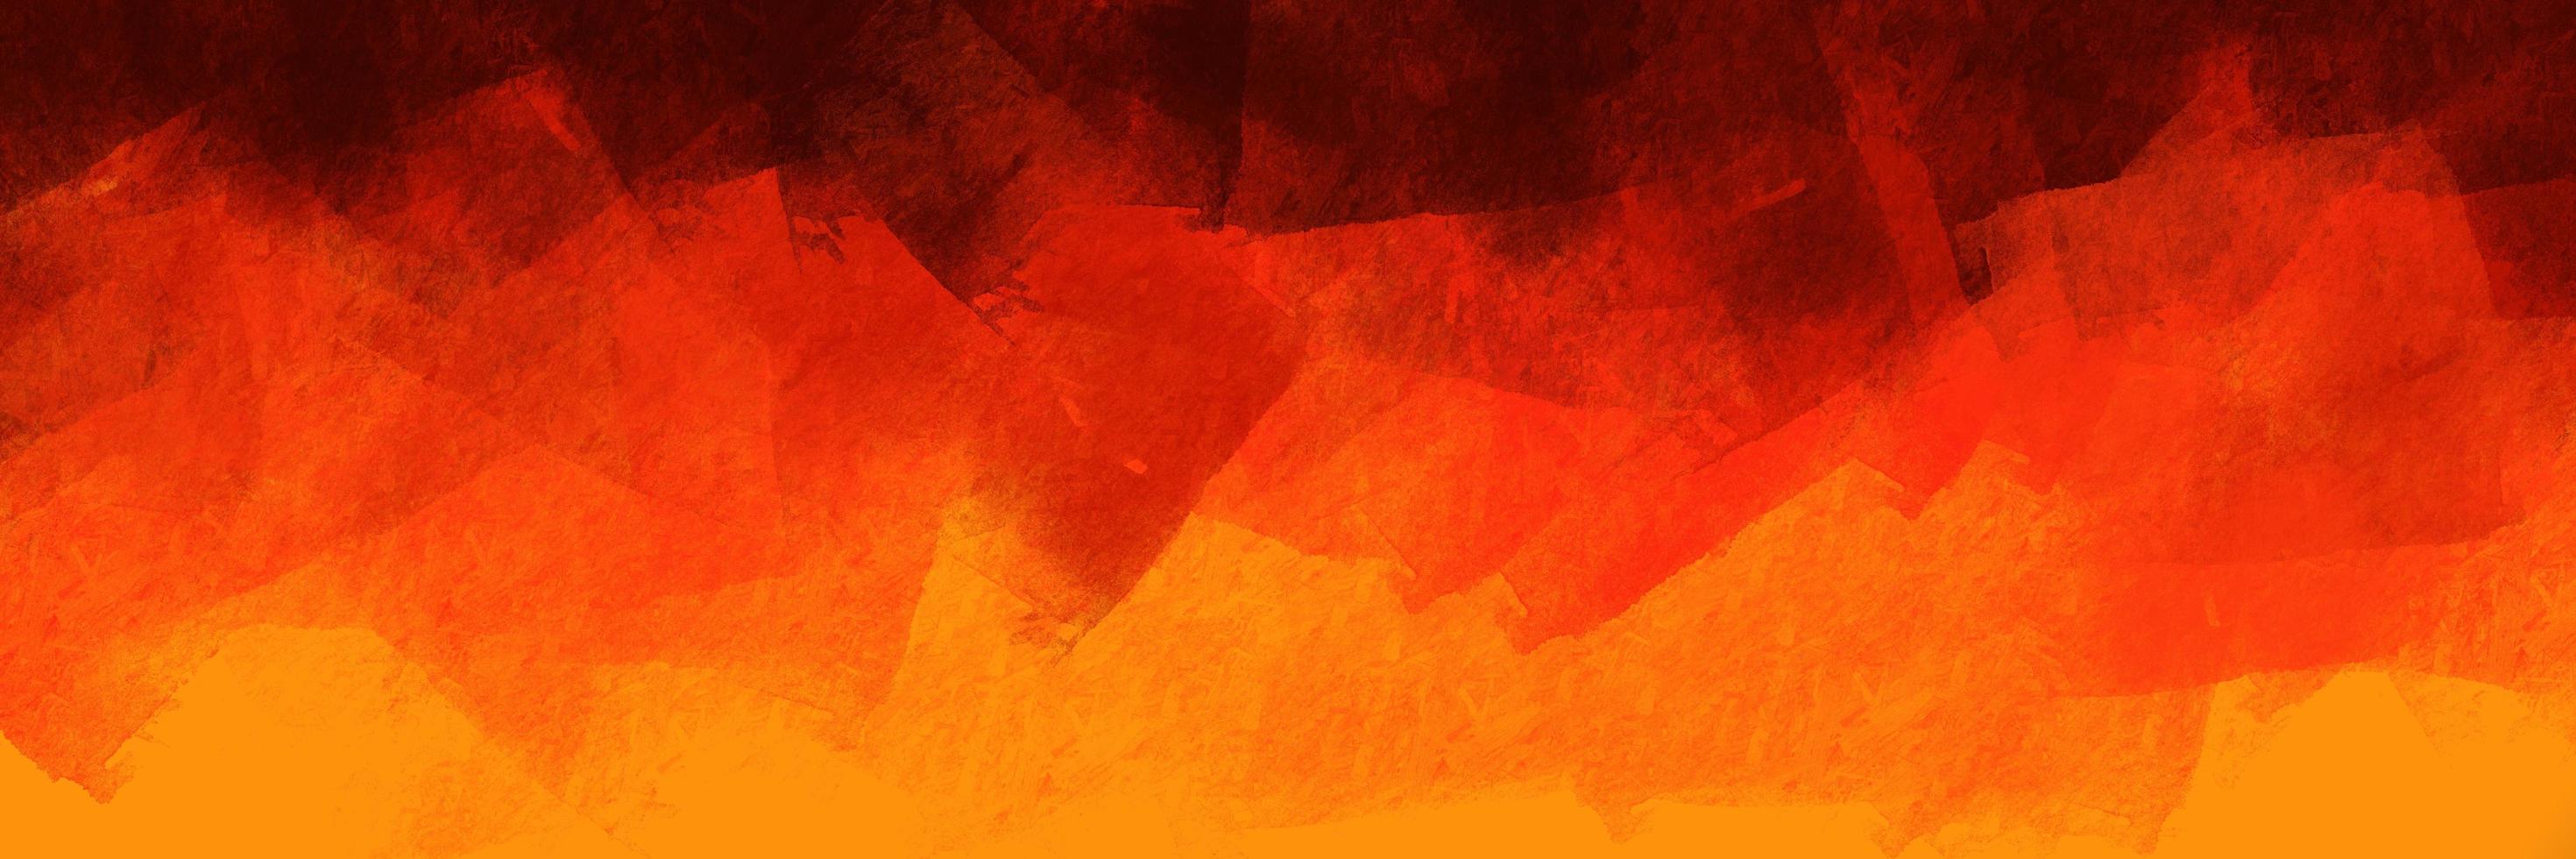 padrão de fundo abstrato escovado na cor laranja com tema de chama. elementos de textura pintada de laranja e preto para design criativo. foto